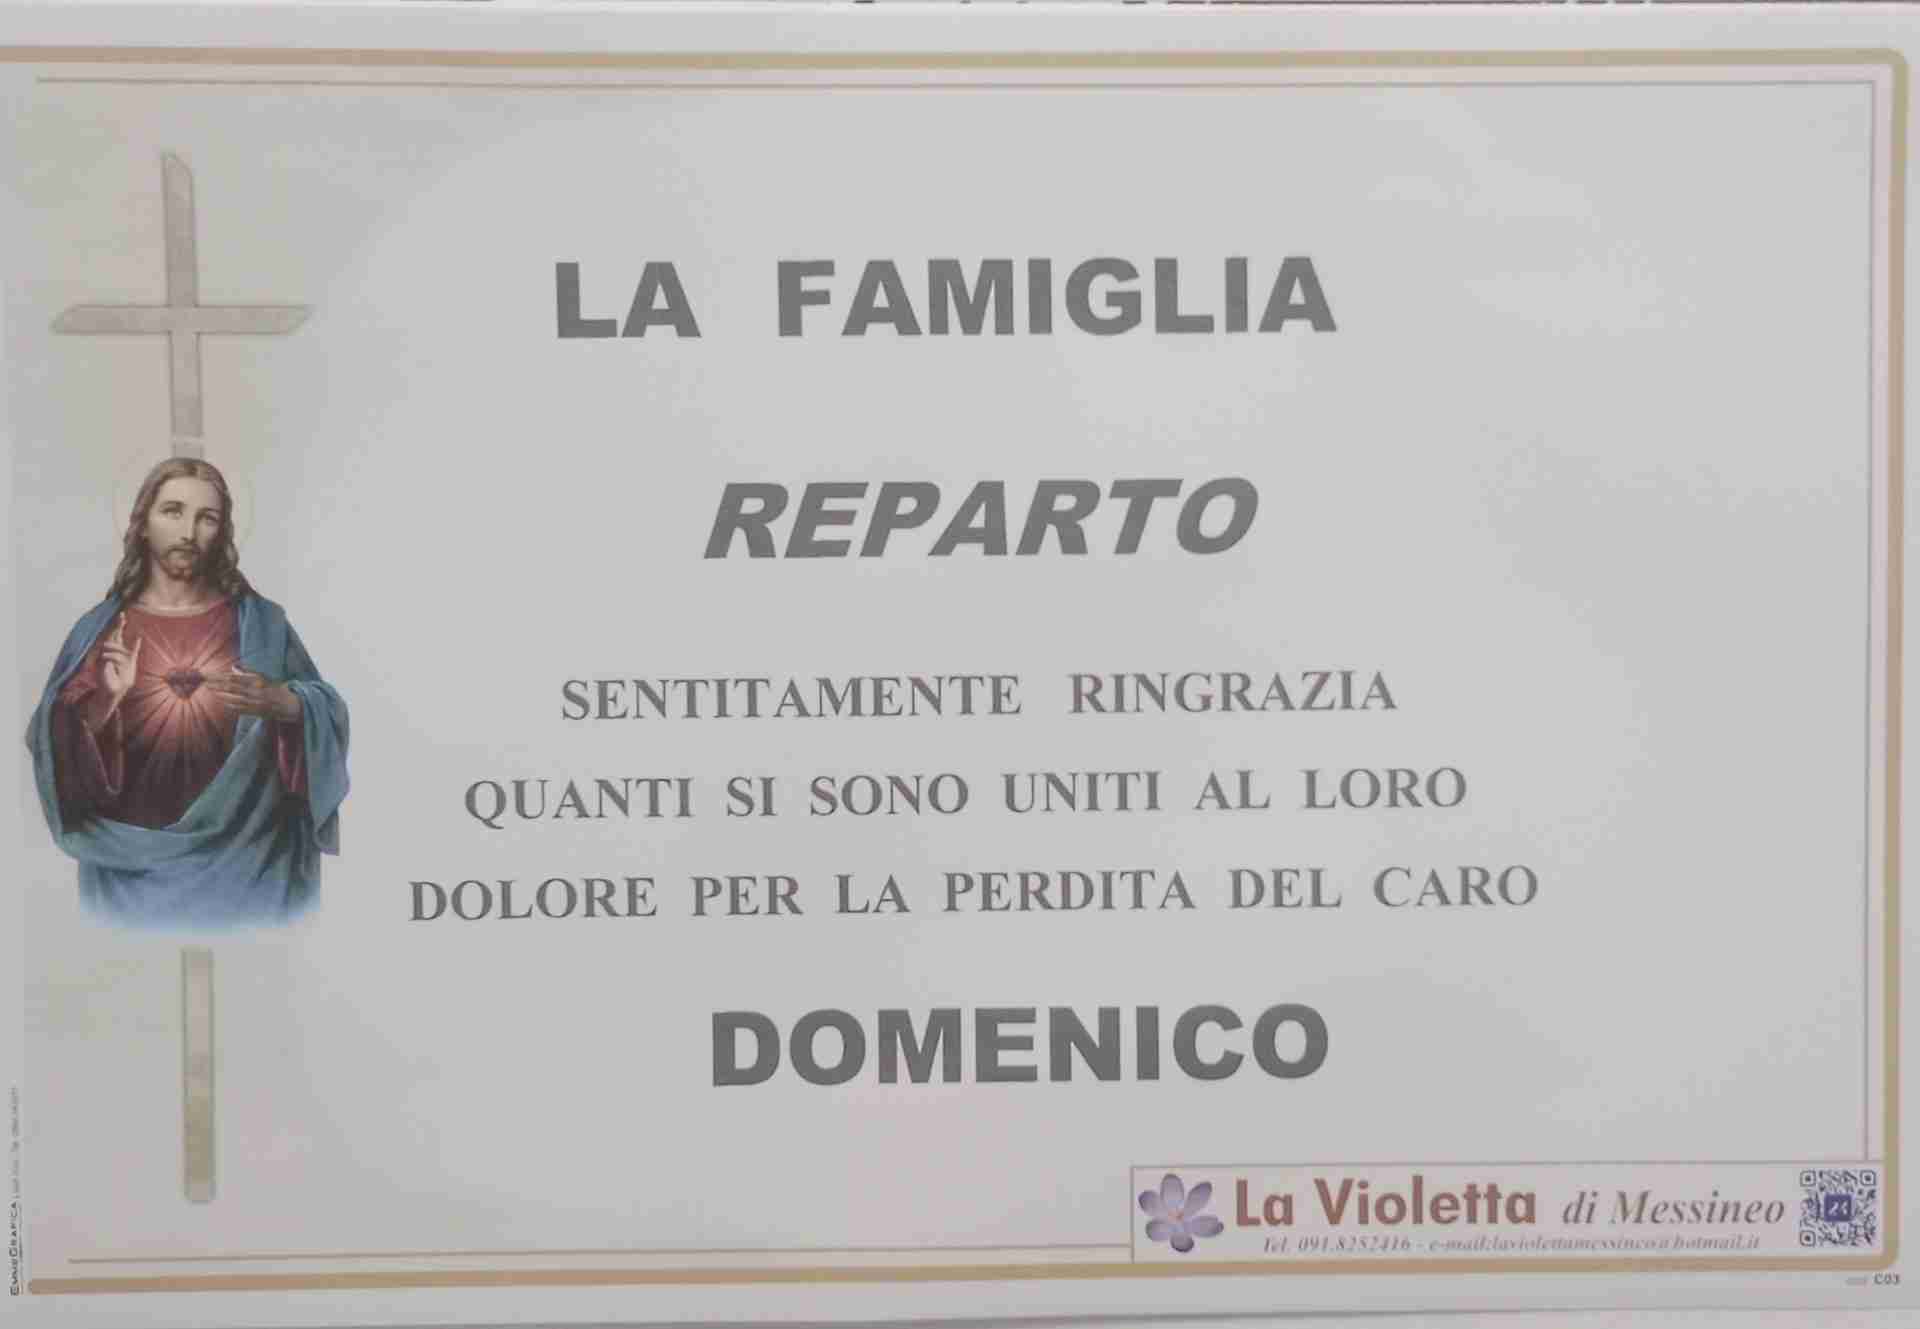 Domenico Reparto